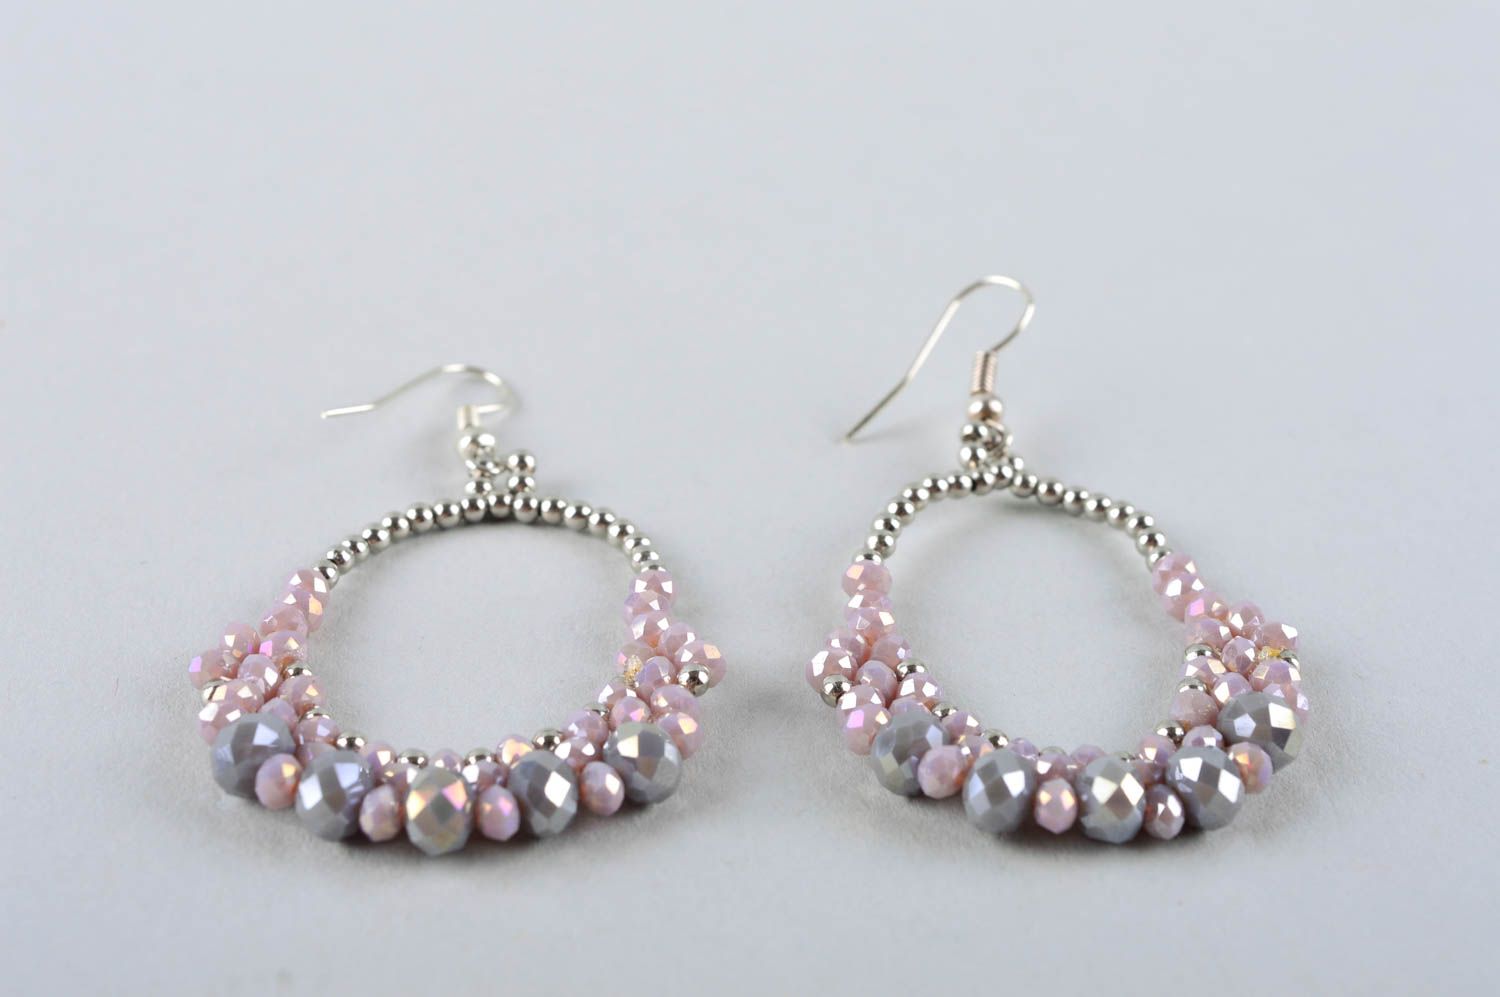 Handmade jewellery stylish earrings accessories for women cute earrings photo 5